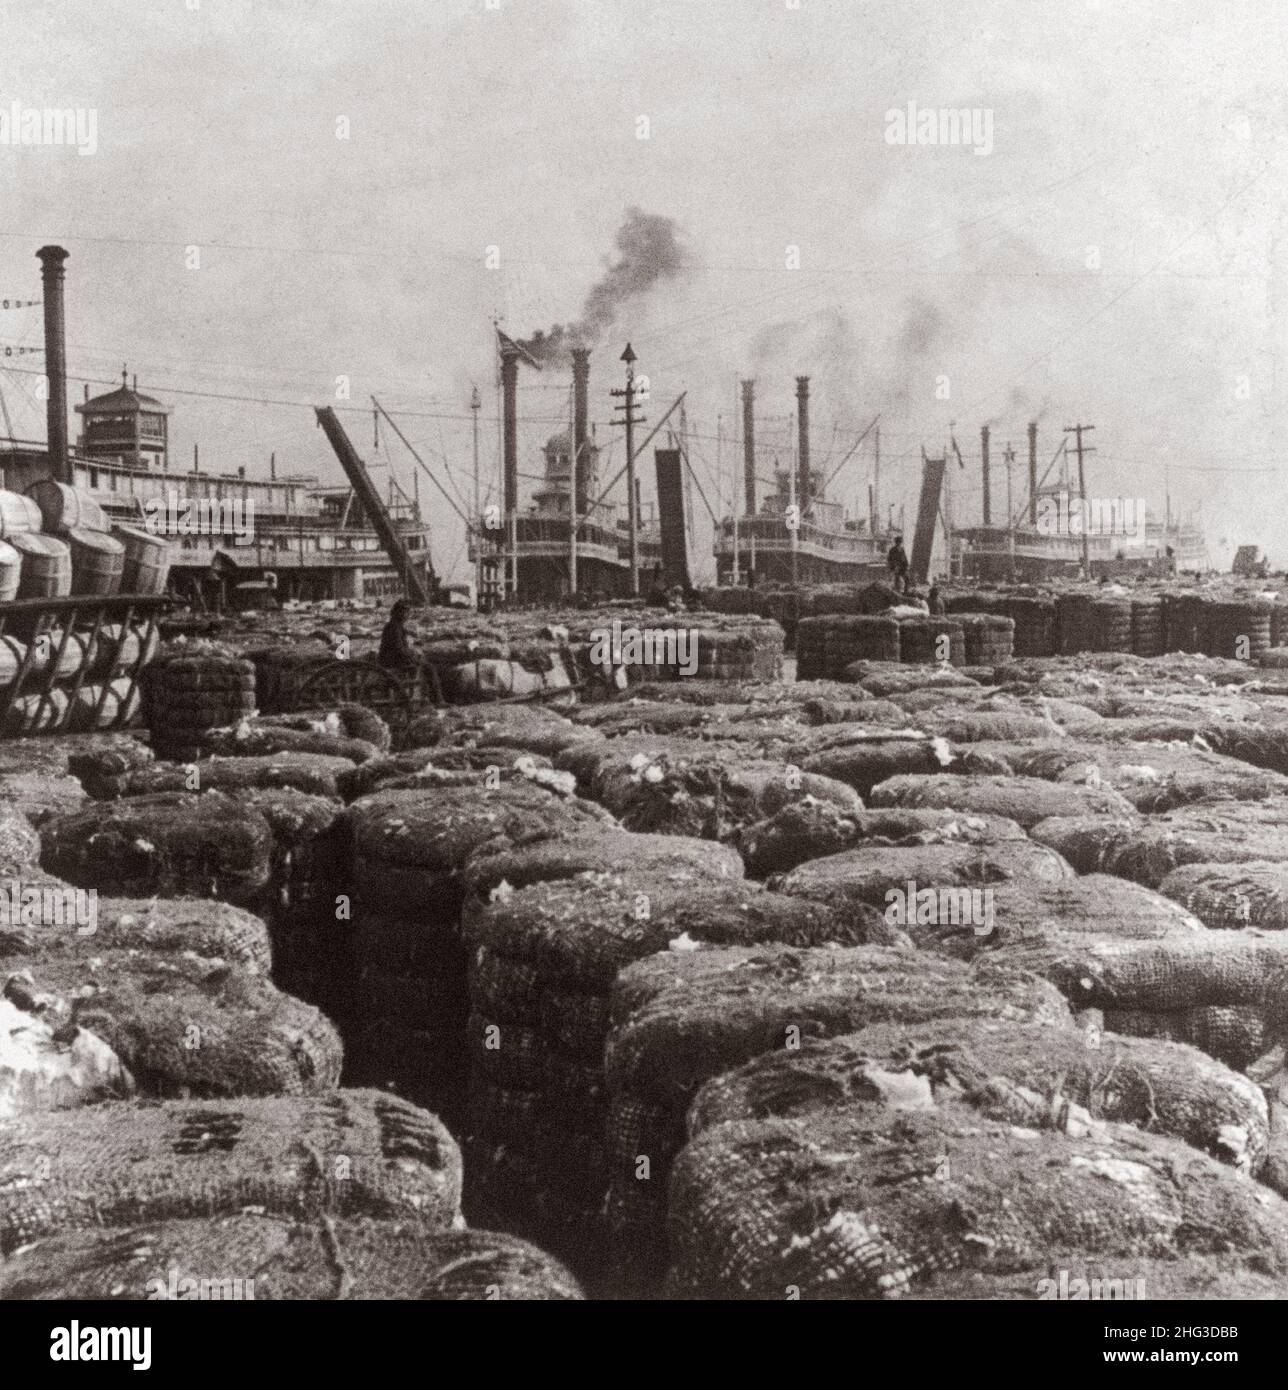 Vintage-Foto des Baumwolldeiches, New Orleans, La. USA. 1901 Foto zeigt Tausende Ballen Baumwolle und vier angedockte Dampfgarer. Stockfoto